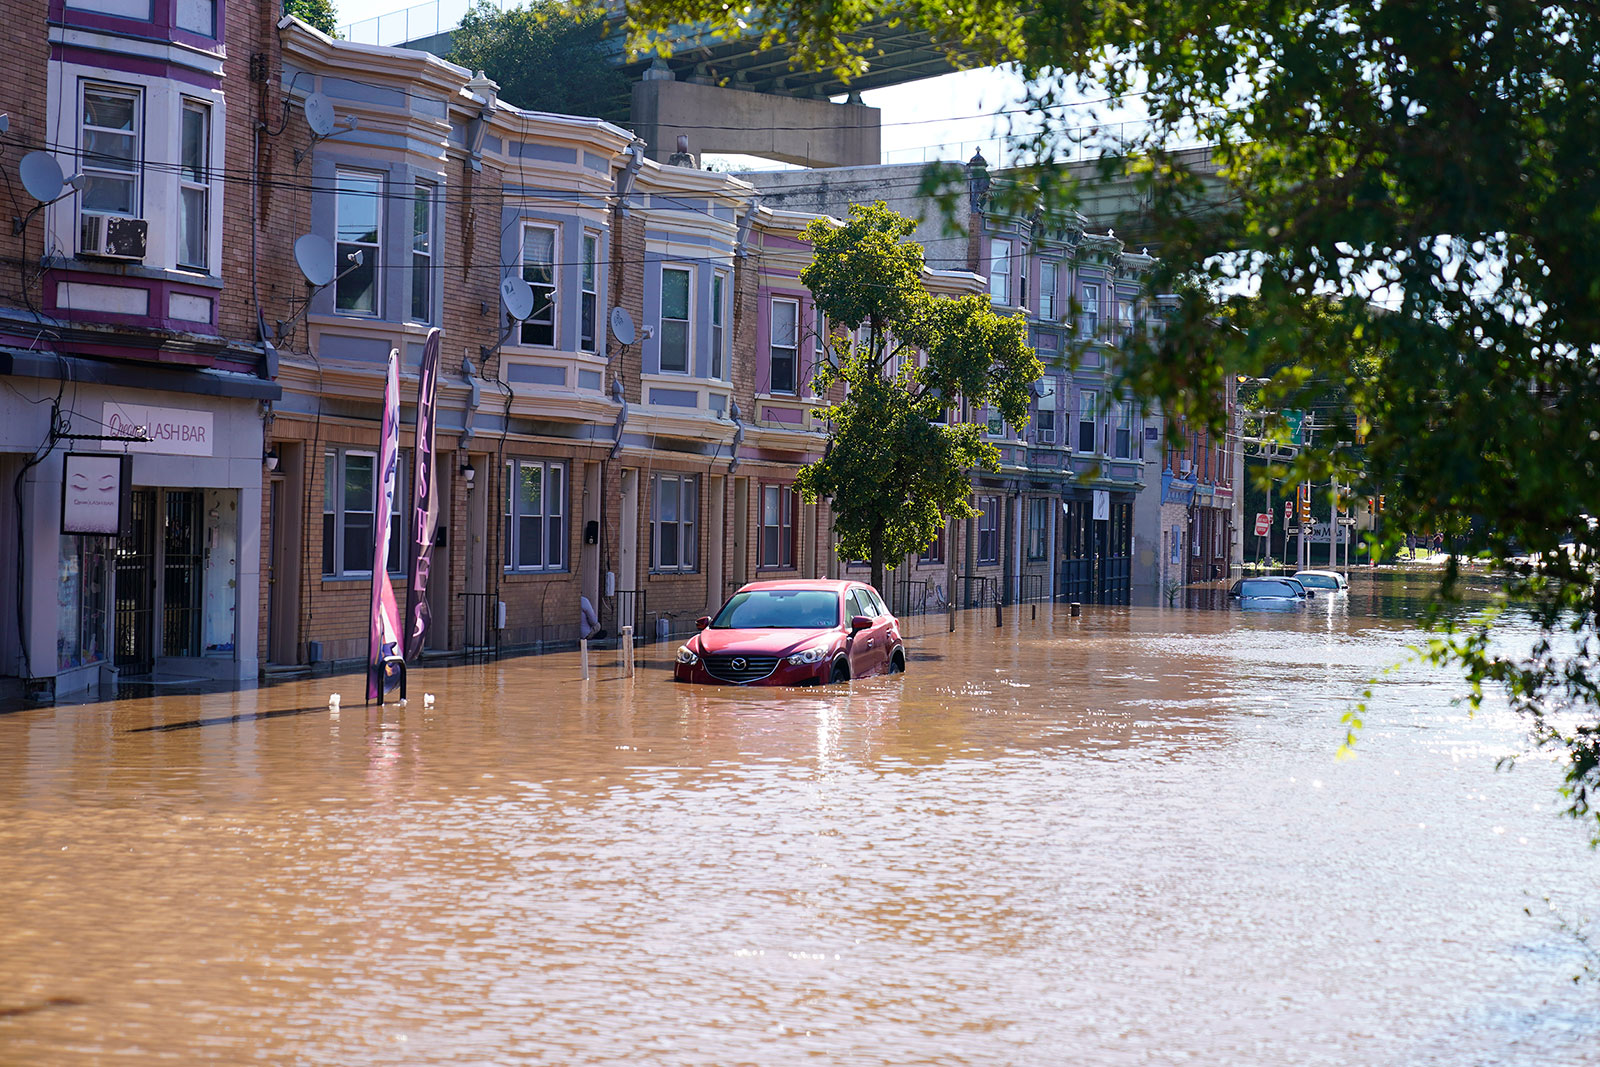 A flooded street in the East Falls neighborhood of Philadelphia on September 2.